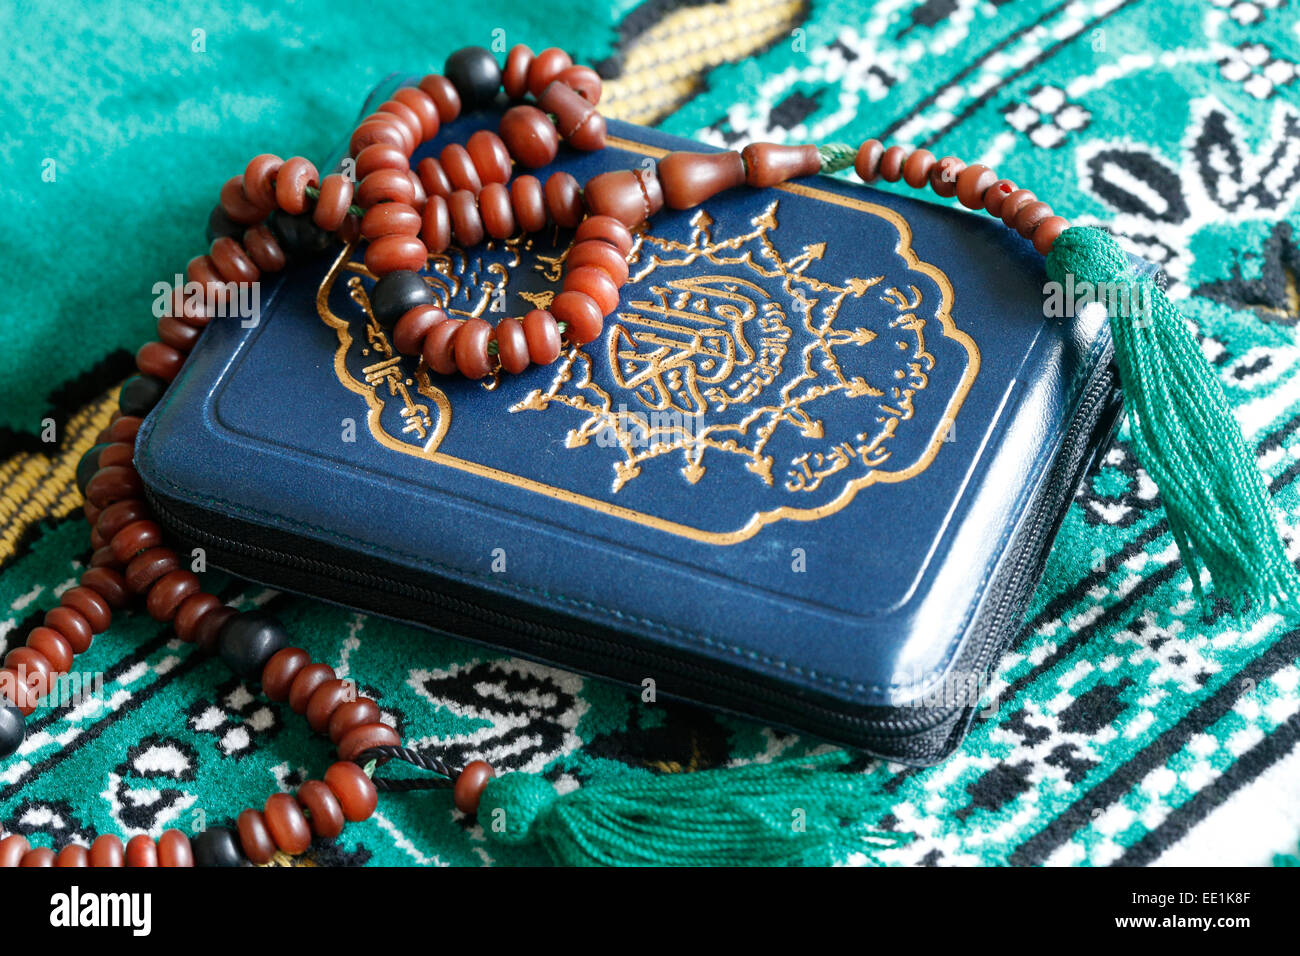 Coran et la prière islamique des perles sur un tapis de prière, Paris, France, Europe Banque D'Images